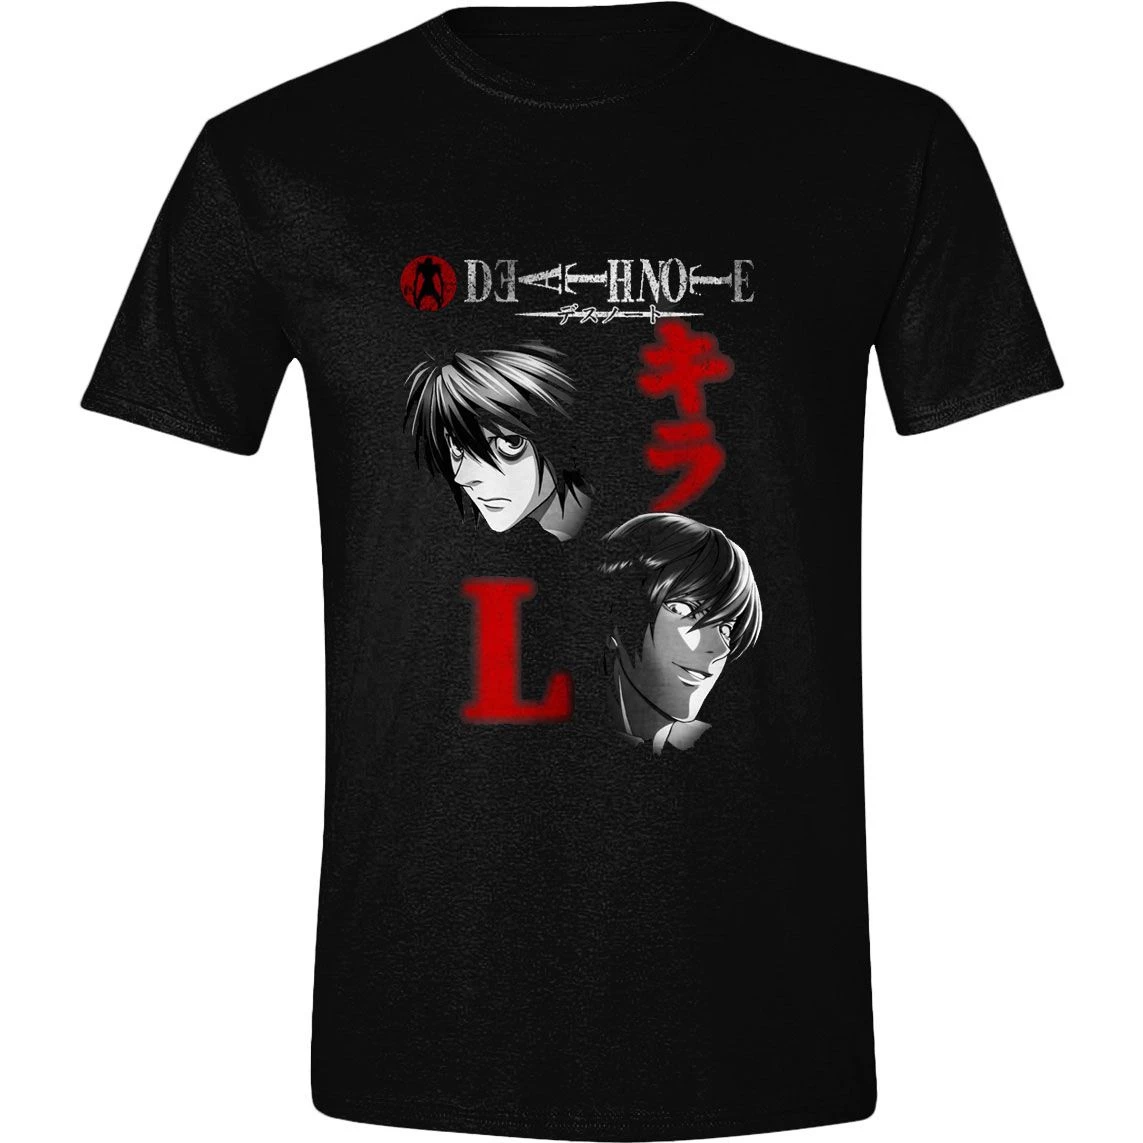 Death Note T-Shirt Written Name Size L PCMerch